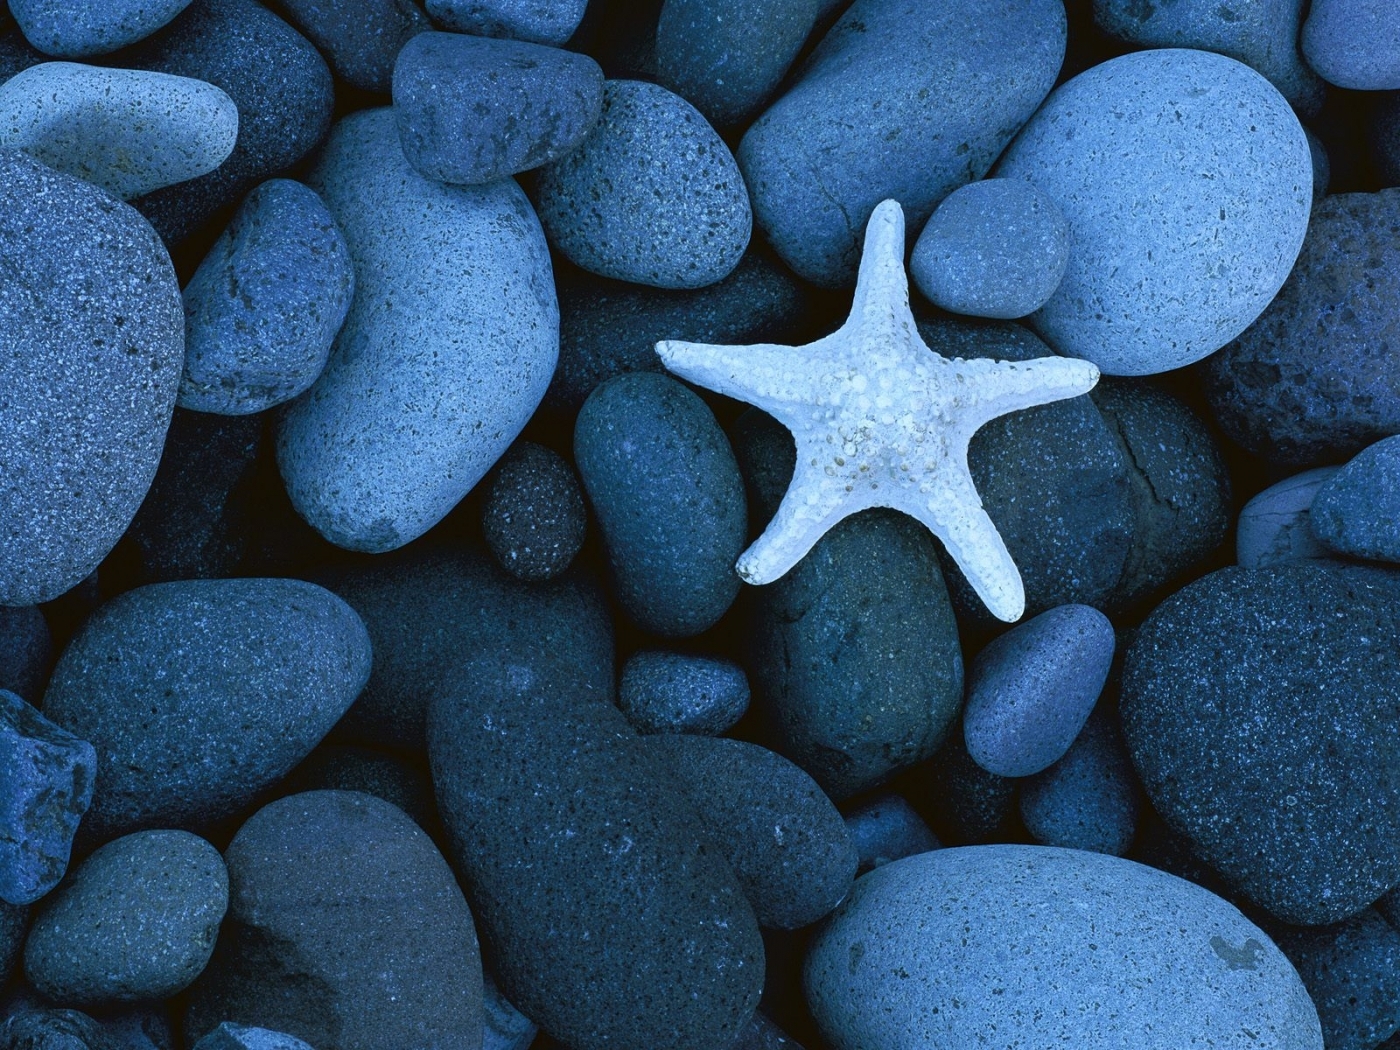 31676 descargar imagen fondo, stones, estrella de mar, azul: fondos de pantalla y protectores de pantalla gratis